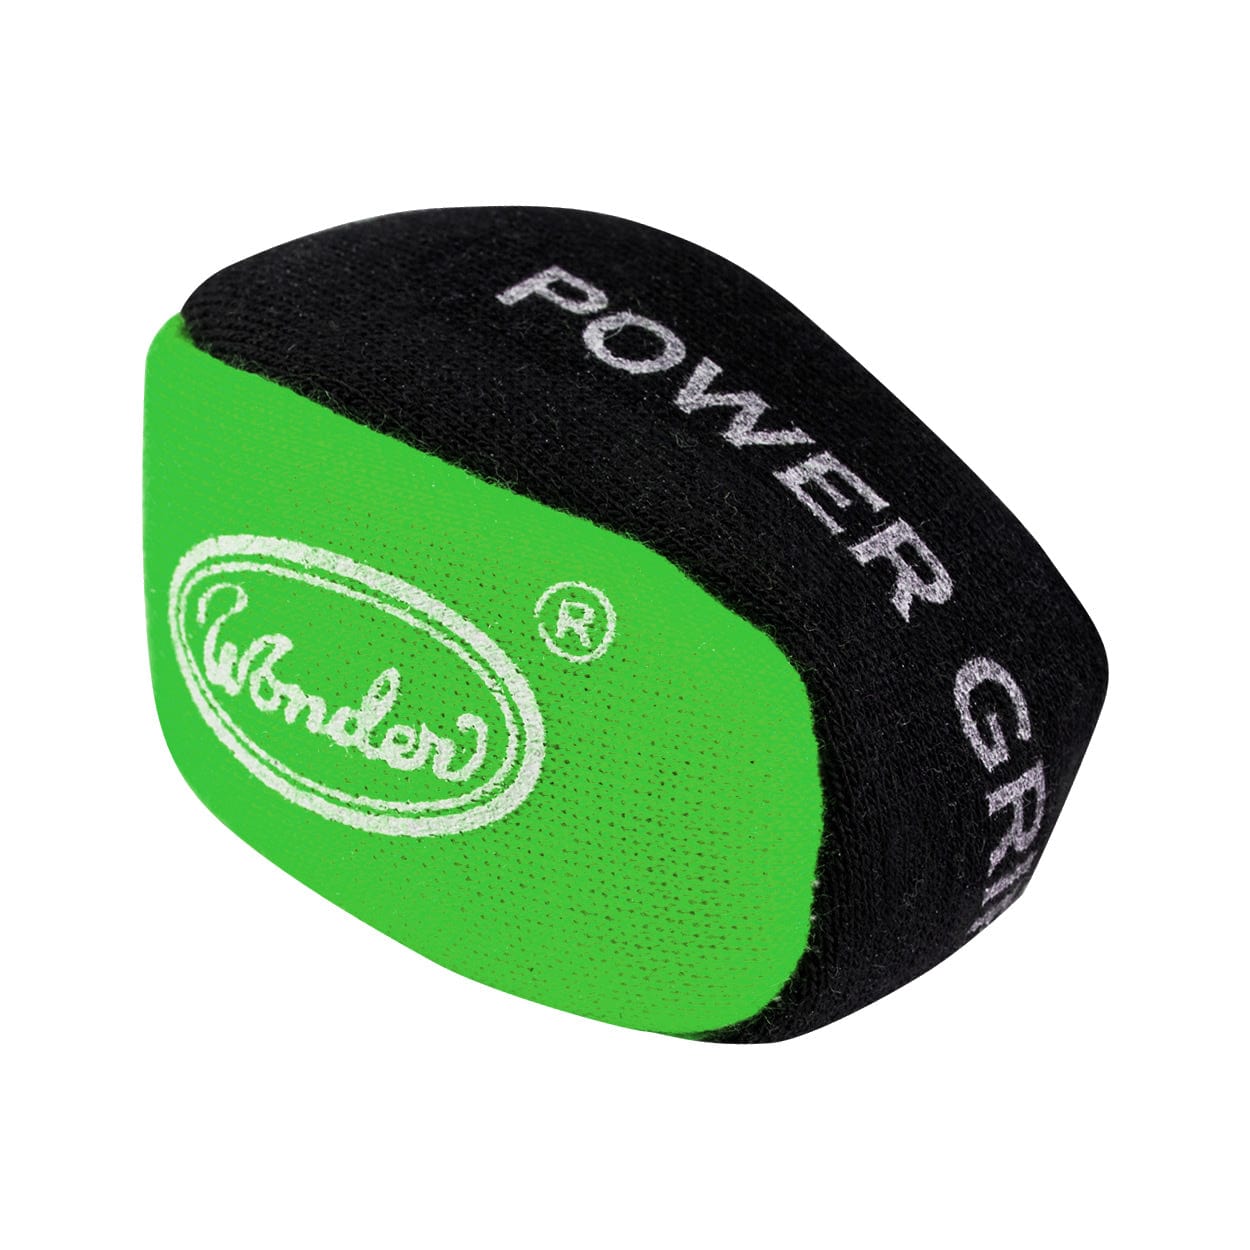 Designa Power Grip Ball - For Better Grip Dart Control - Absorbs Moisture Green